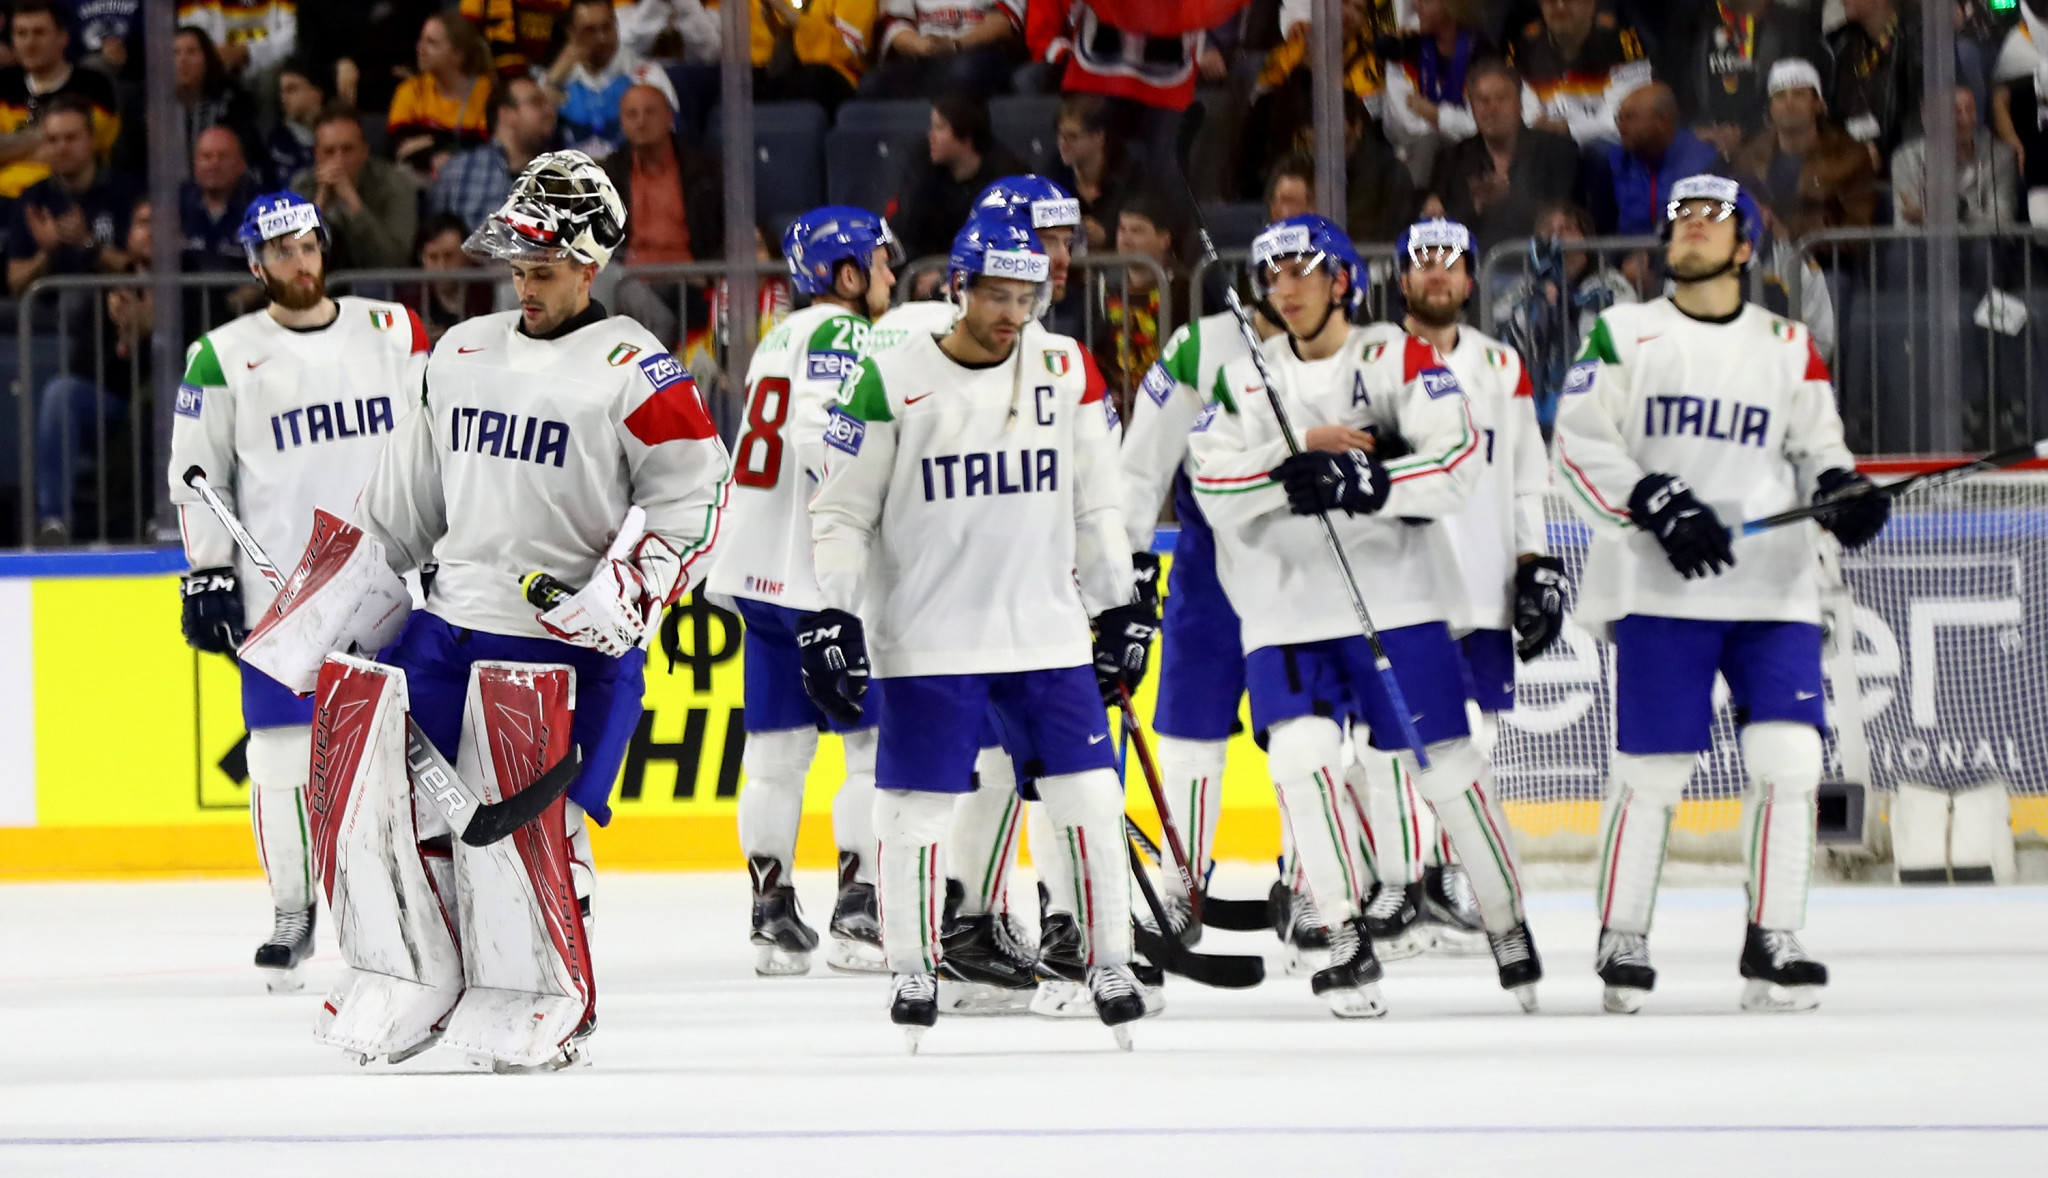 Italy men's national ice hockey team - Wikipedia